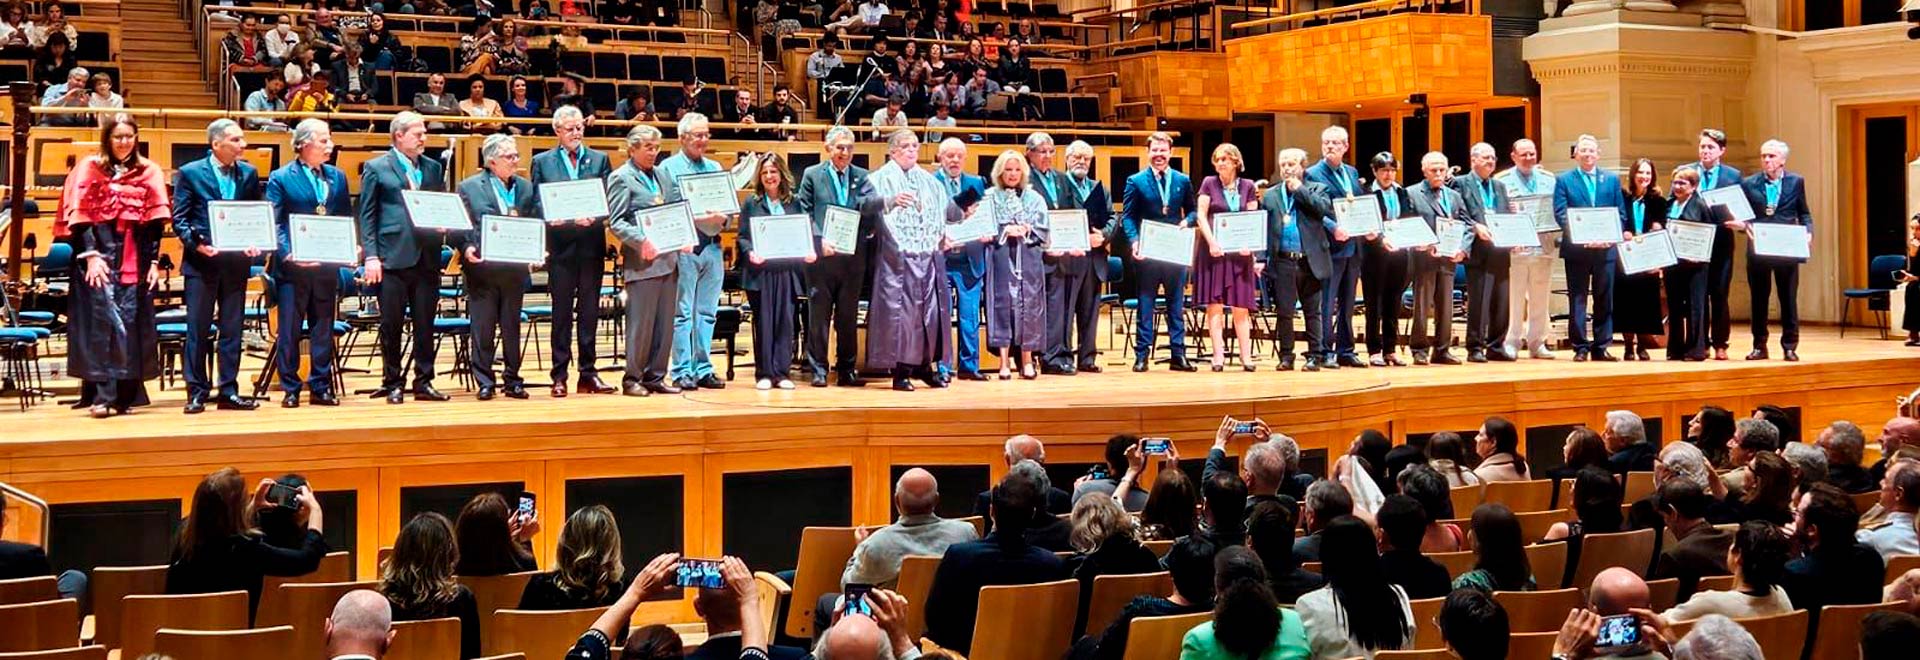 Entidades e pessoas ao receberem a Medalha Armando de Salles Oliveira (Foto: Cecília Bastos/ USP Imagens)